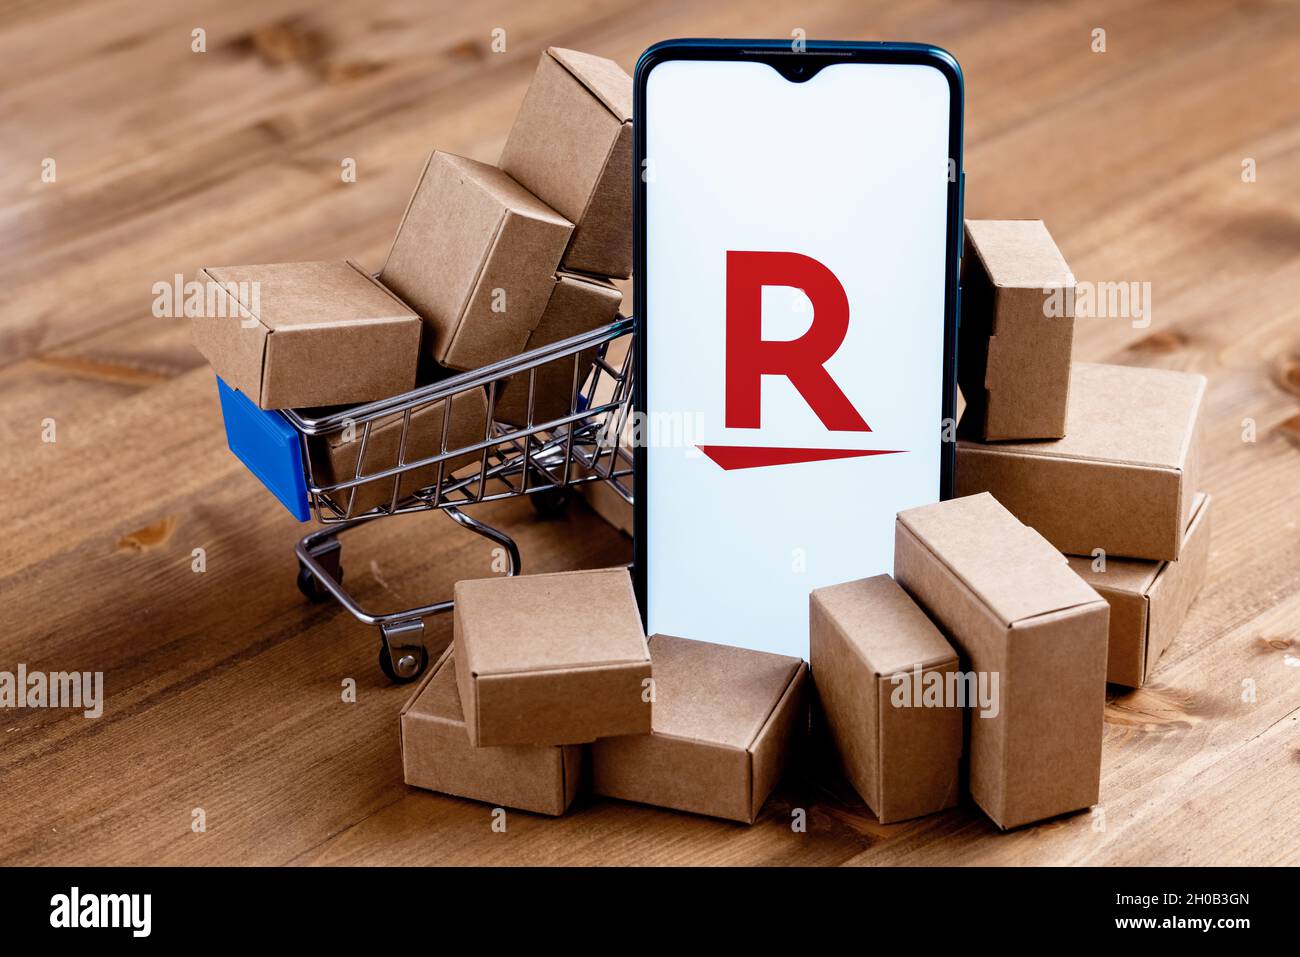 Rakuten Group è un'azienda giapponese di commercio elettronico e di vendita al dettaglio online. Smartphone con logo Rakuten sullo schermo, carrello e pacchi. Foto Stock